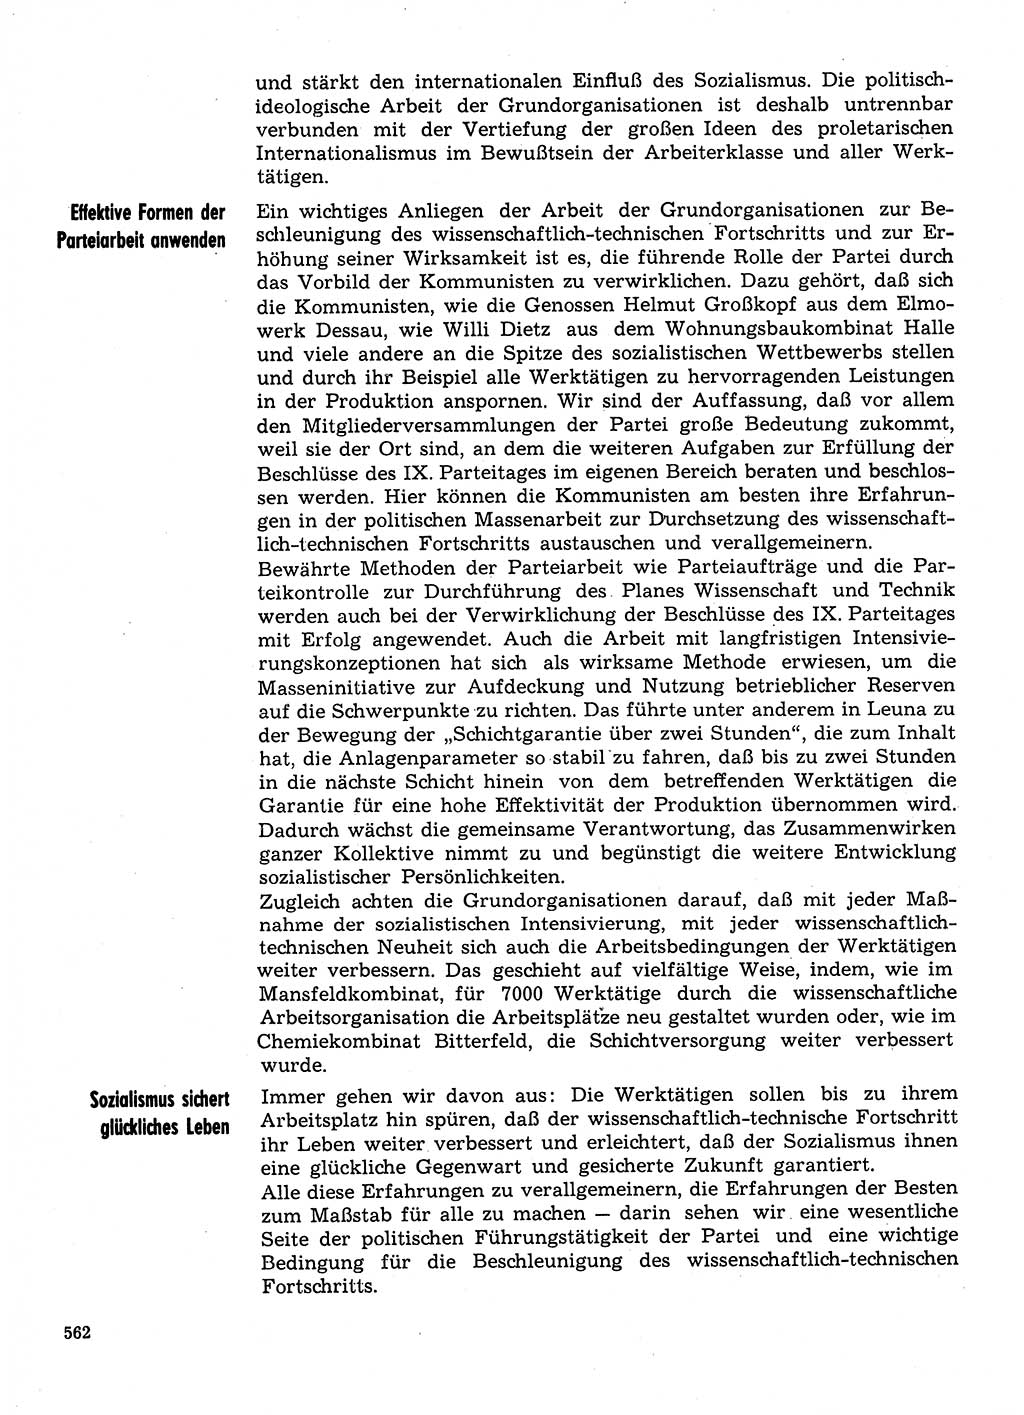 Neuer Weg (NW), Organ des Zentralkomitees (ZK) der SED (Sozialistische Einheitspartei Deutschlands) für Fragen des Parteilebens, 31. Jahrgang [Deutsche Demokratische Republik (DDR)] 1976, Seite 562 (NW ZK SED DDR 1976, S. 562)